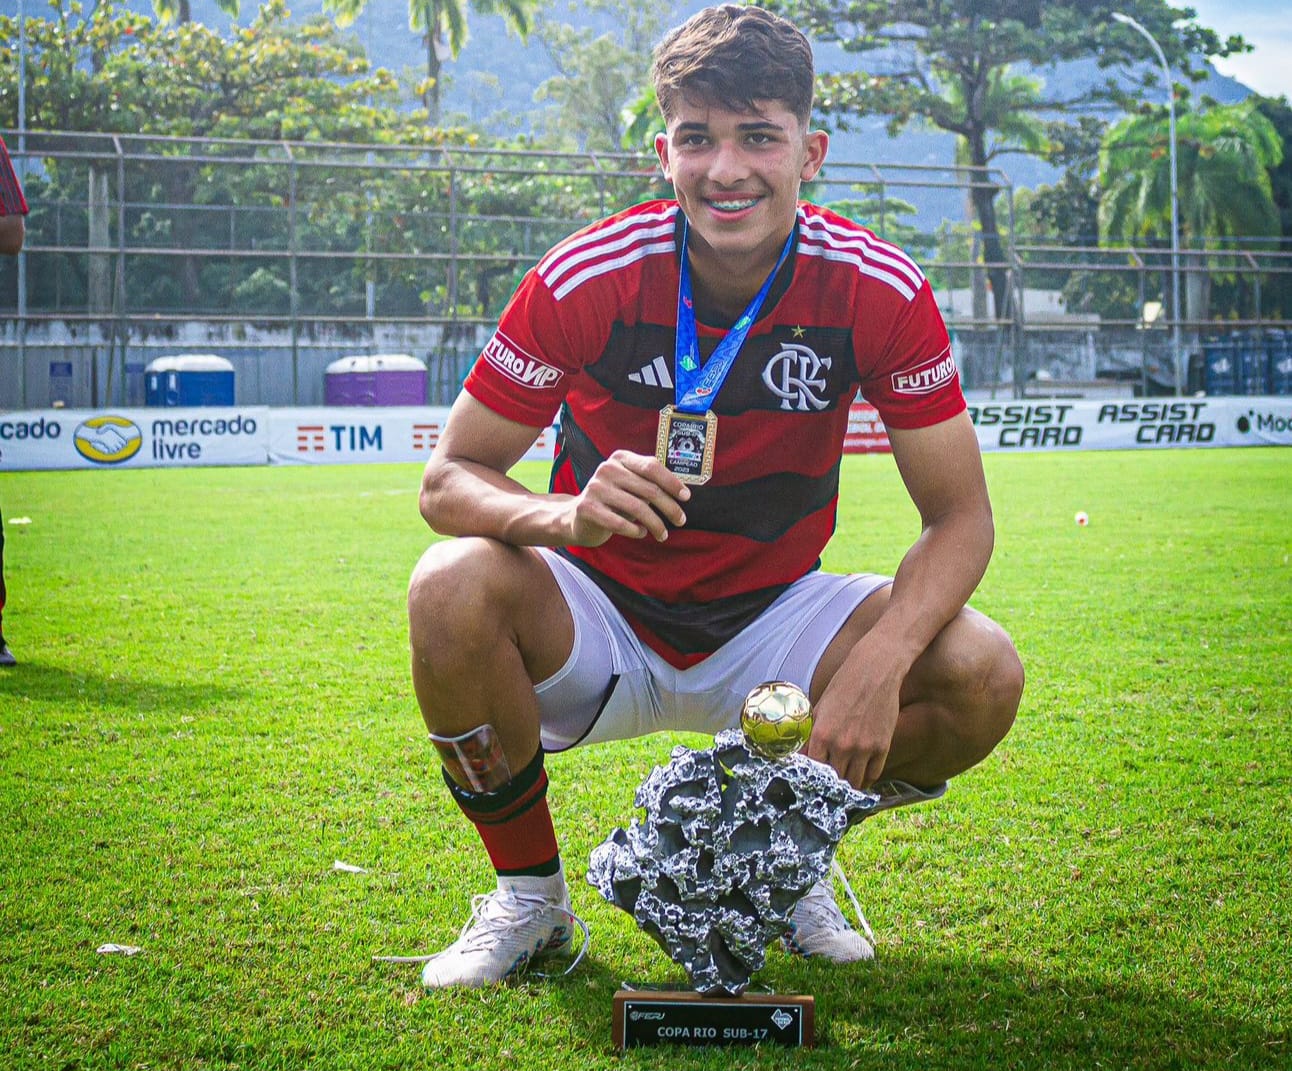 Pedro Lemos com a medalha e o troféu da Copa Rio Sub-17, conquistada pelo Flamengo (Foto: Rafael Silva/Arquivo pessoal)